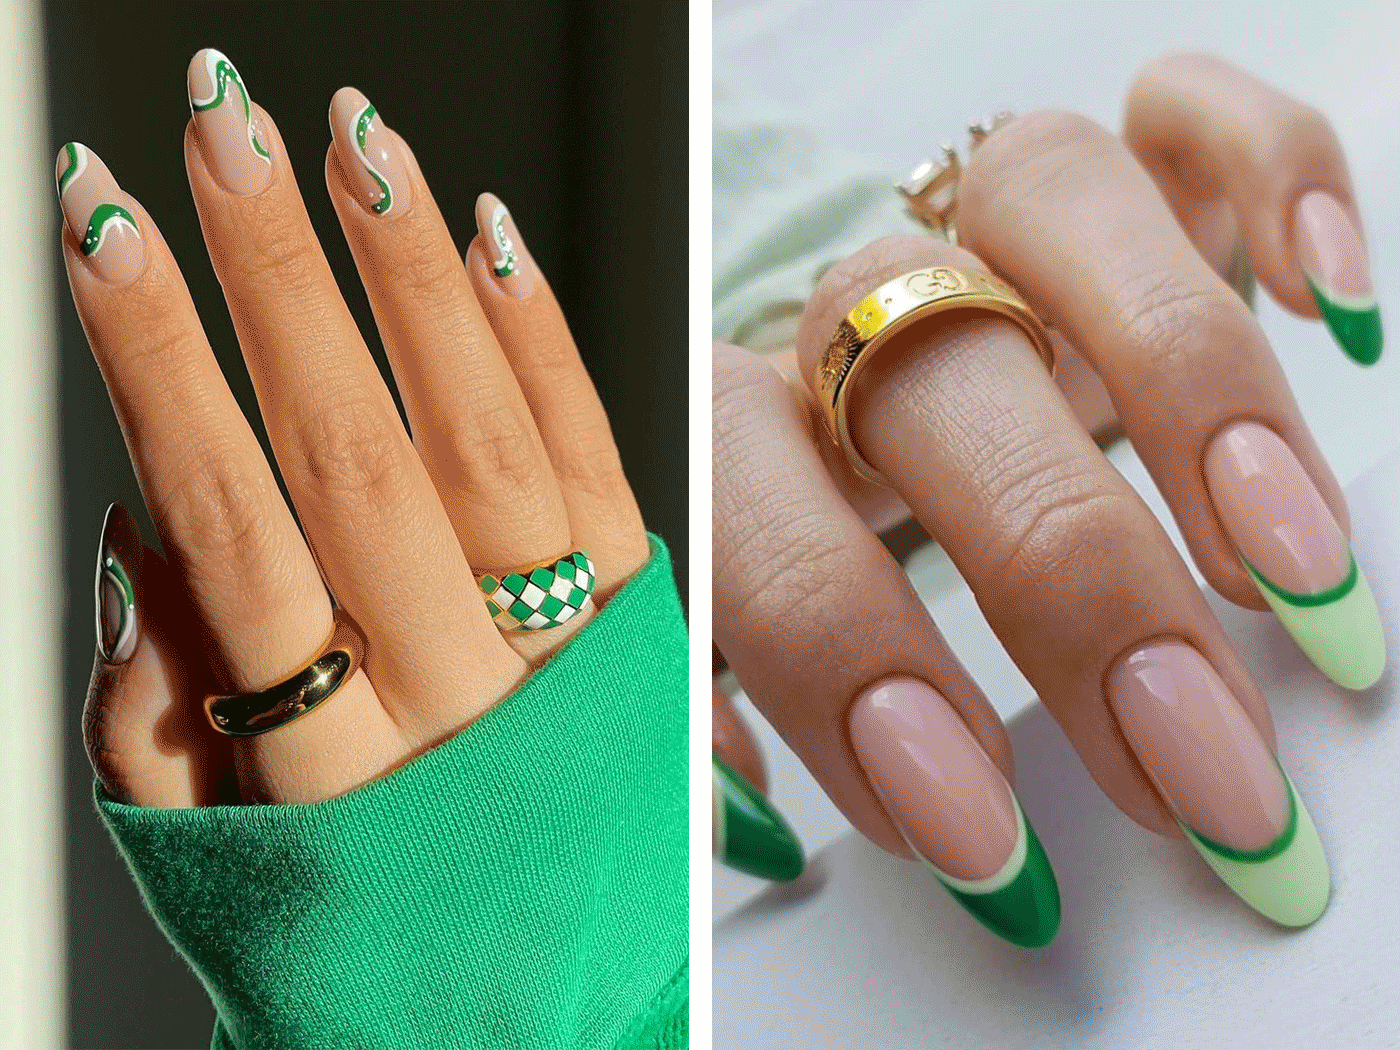 Μανικιούρ: Οι 10 αποχρώσεις του πράσινου και τα ωραιότερα nail art designs